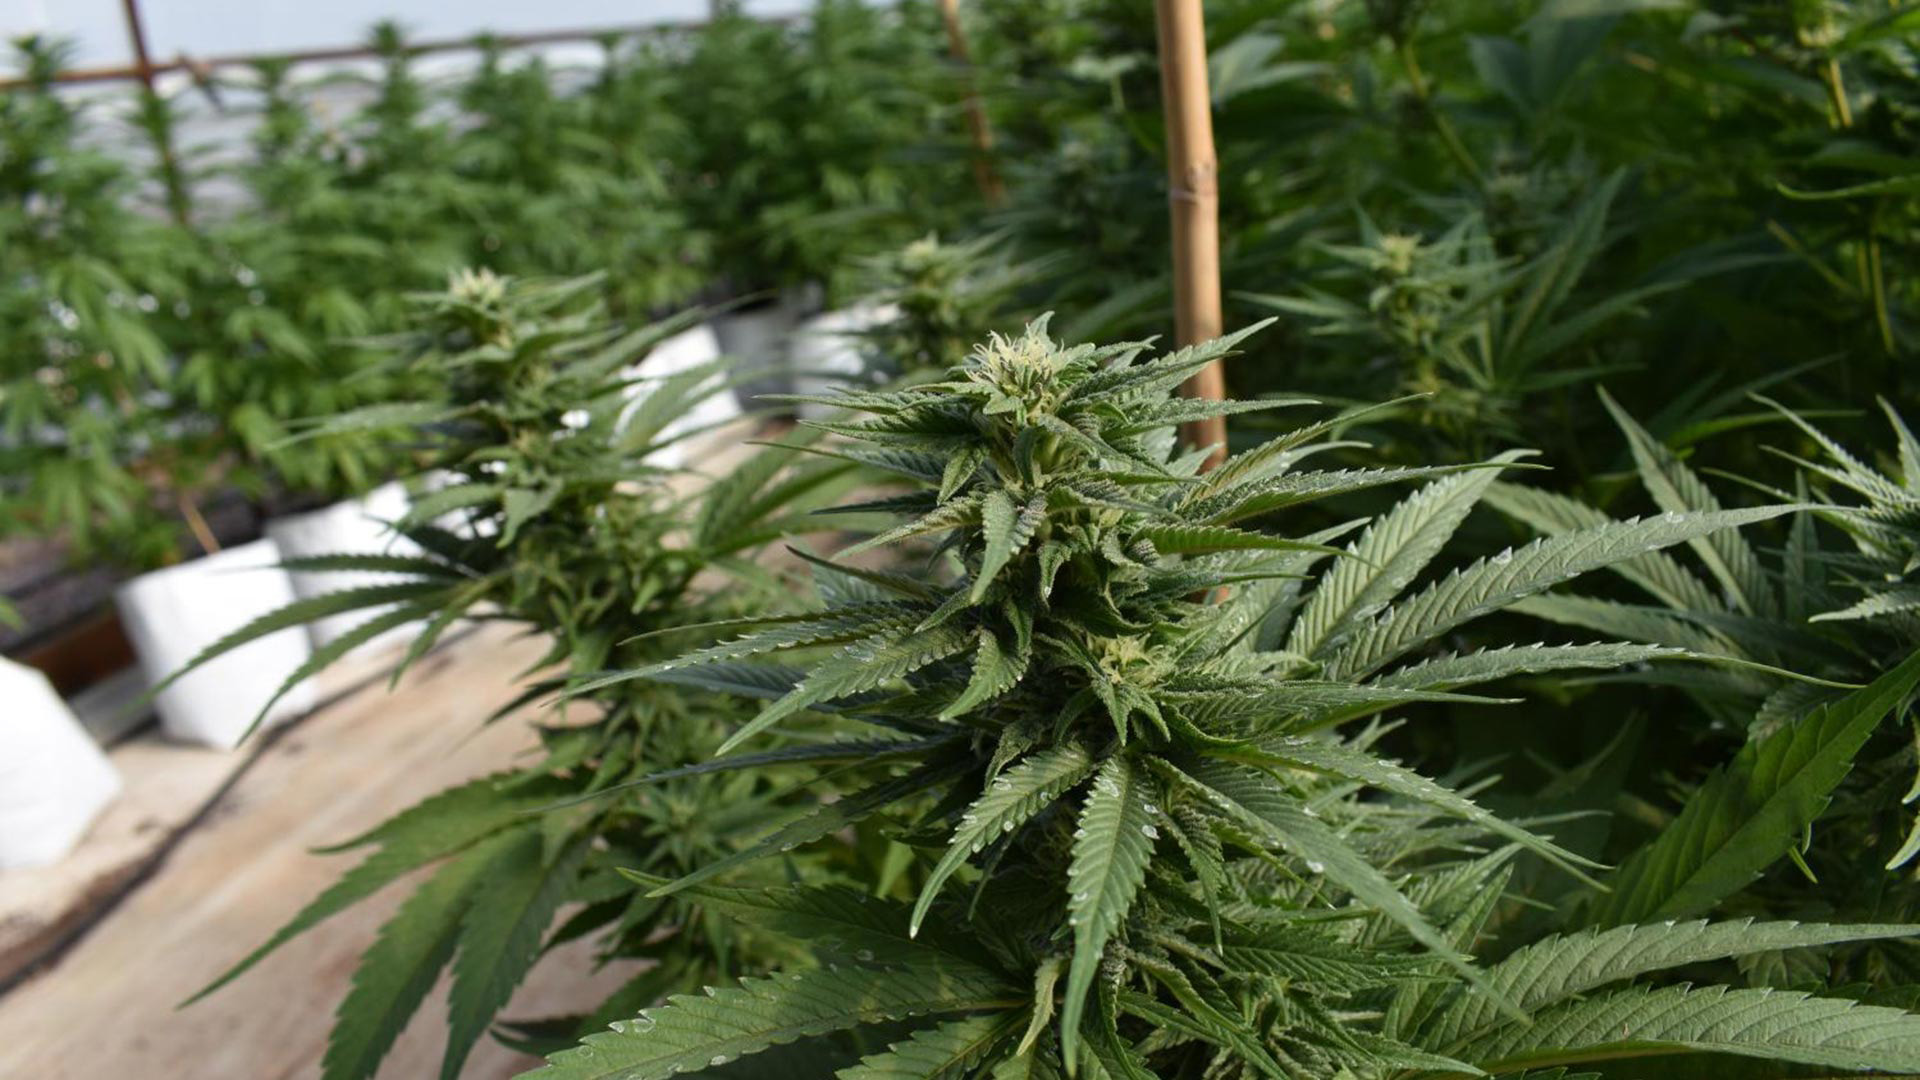 Organic marijuana being grown at an Arizona farm for processing into medical marijuana.